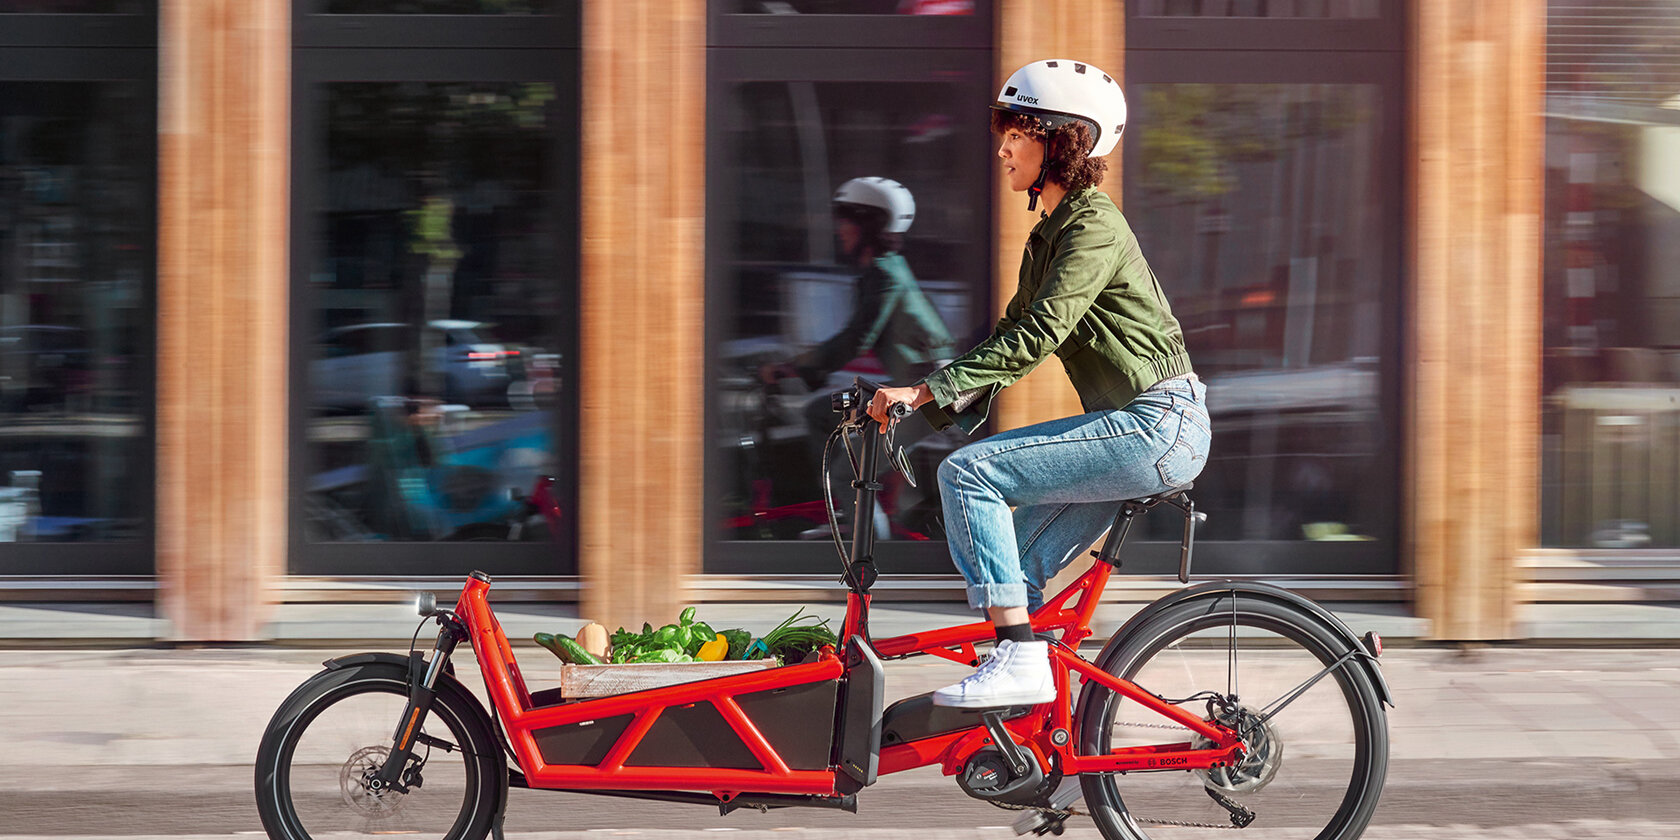 Frau mit eBike-Helm fährt auf rotem Lastenrad-Pedelec, das mit eineer Kiste Gemüse beladen ist, durch die Stadt